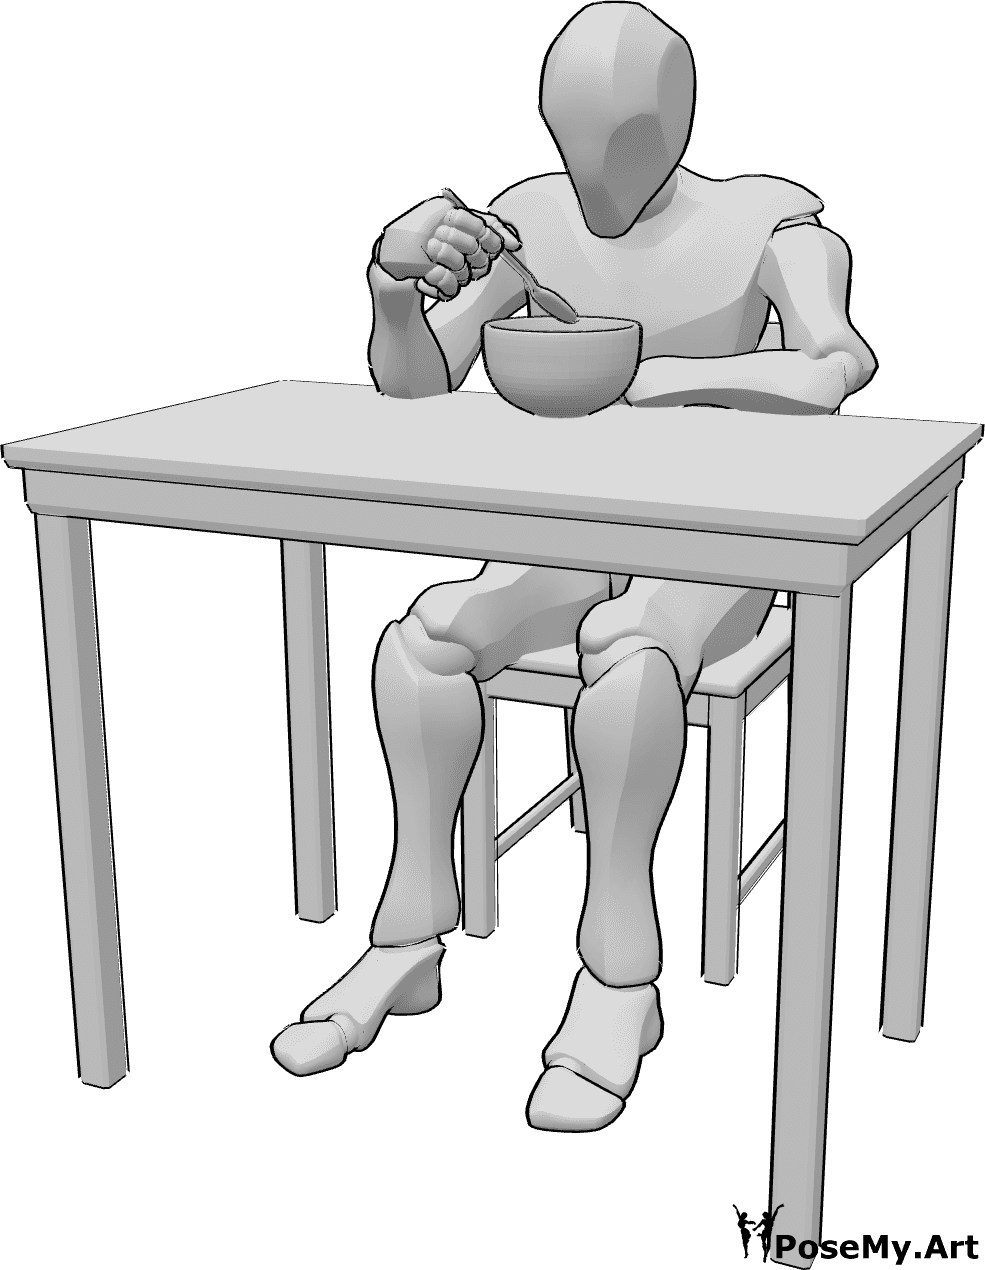 Référence des poses- Homme assis en train de manger - L'homme est assis à table et mange dans un bol, tenant la cuillère dans sa main droite.